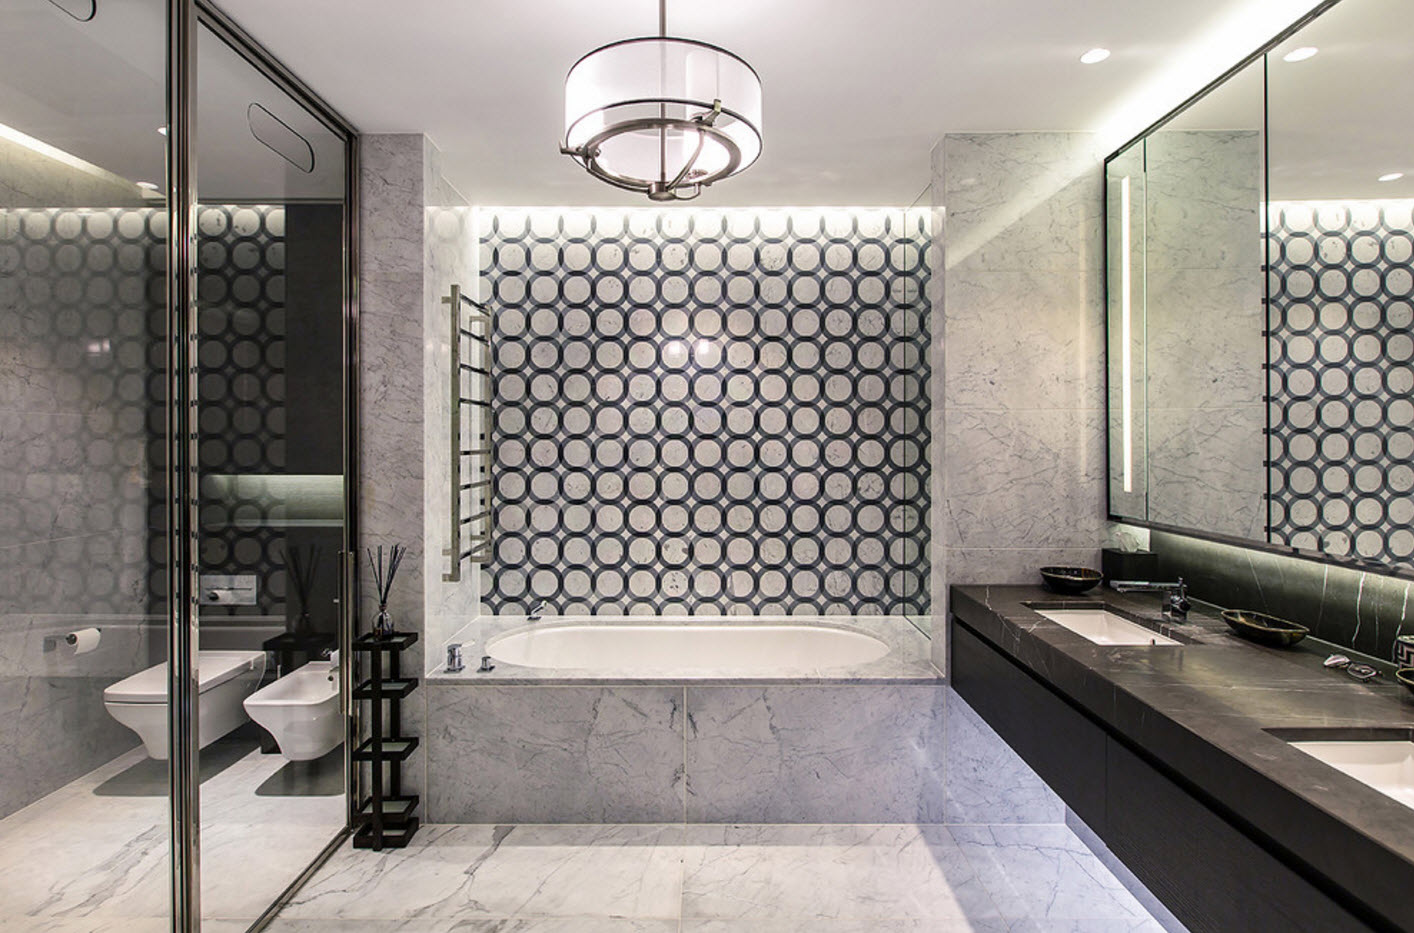 projekt łazienki z geometrycznymi wzorami toaletowymi